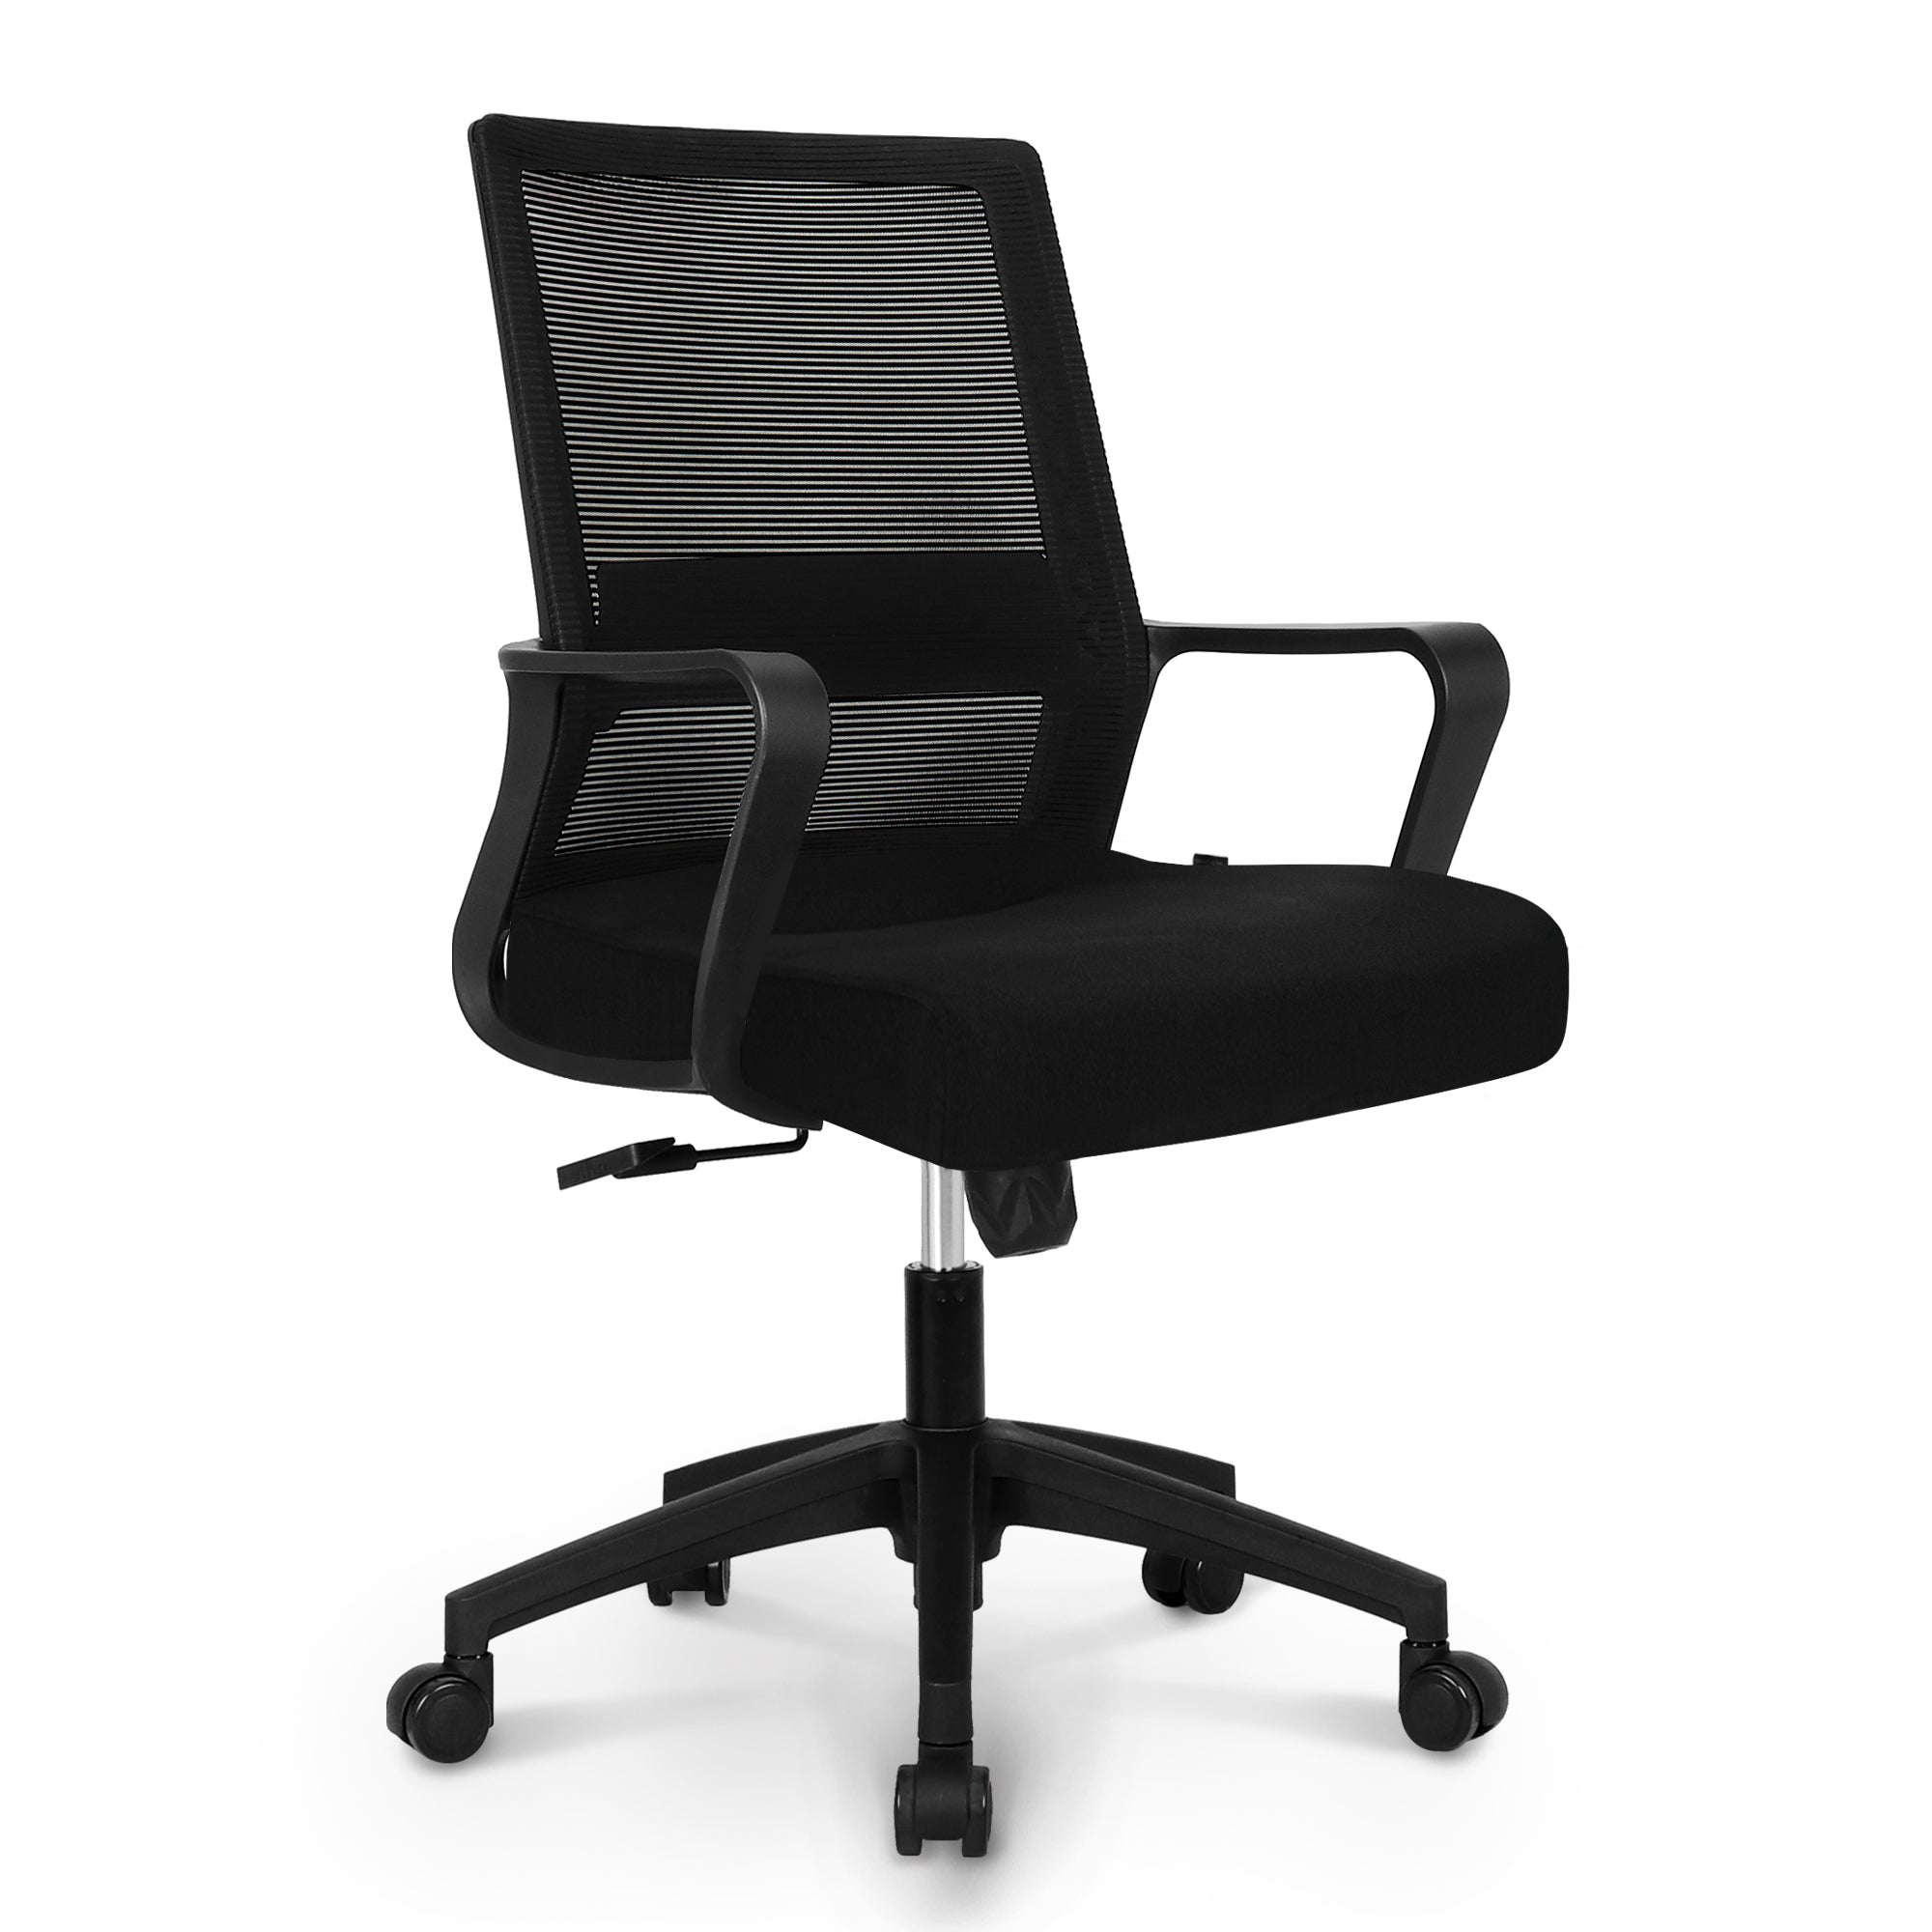 801 black frame mesh office chair